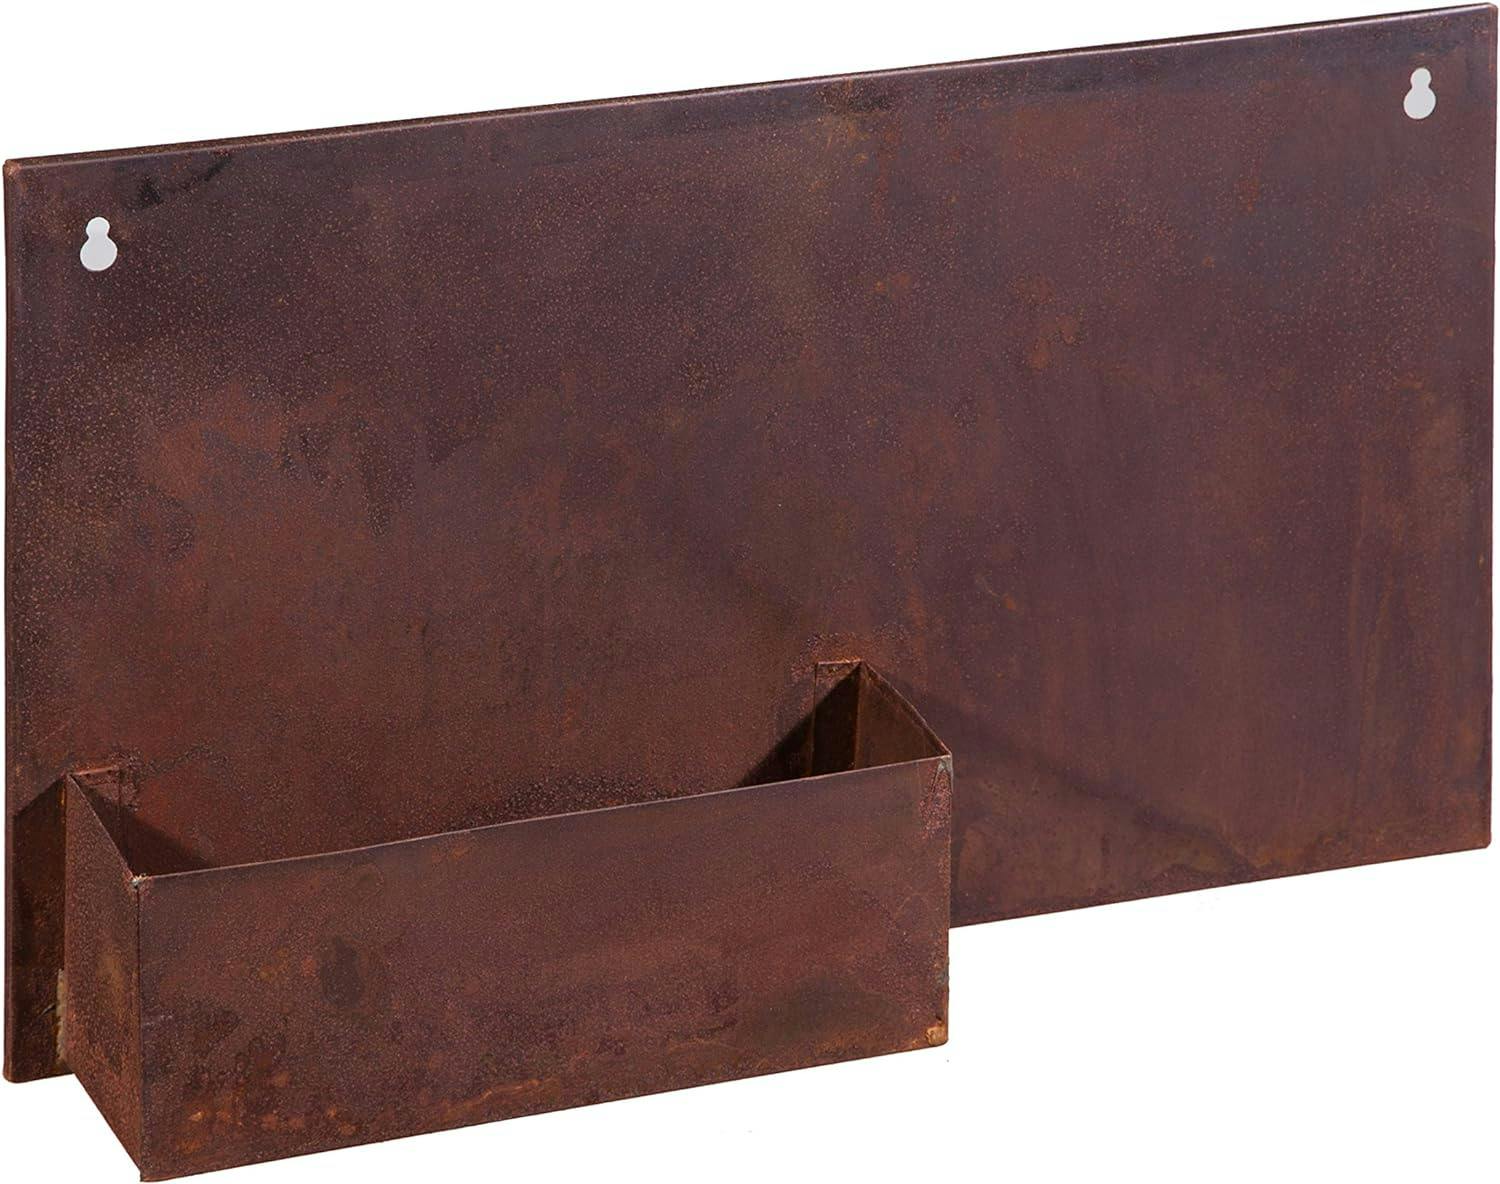 Rustic Galvanized Metal Rectangular Wall Planter for Indoor/Outdoor